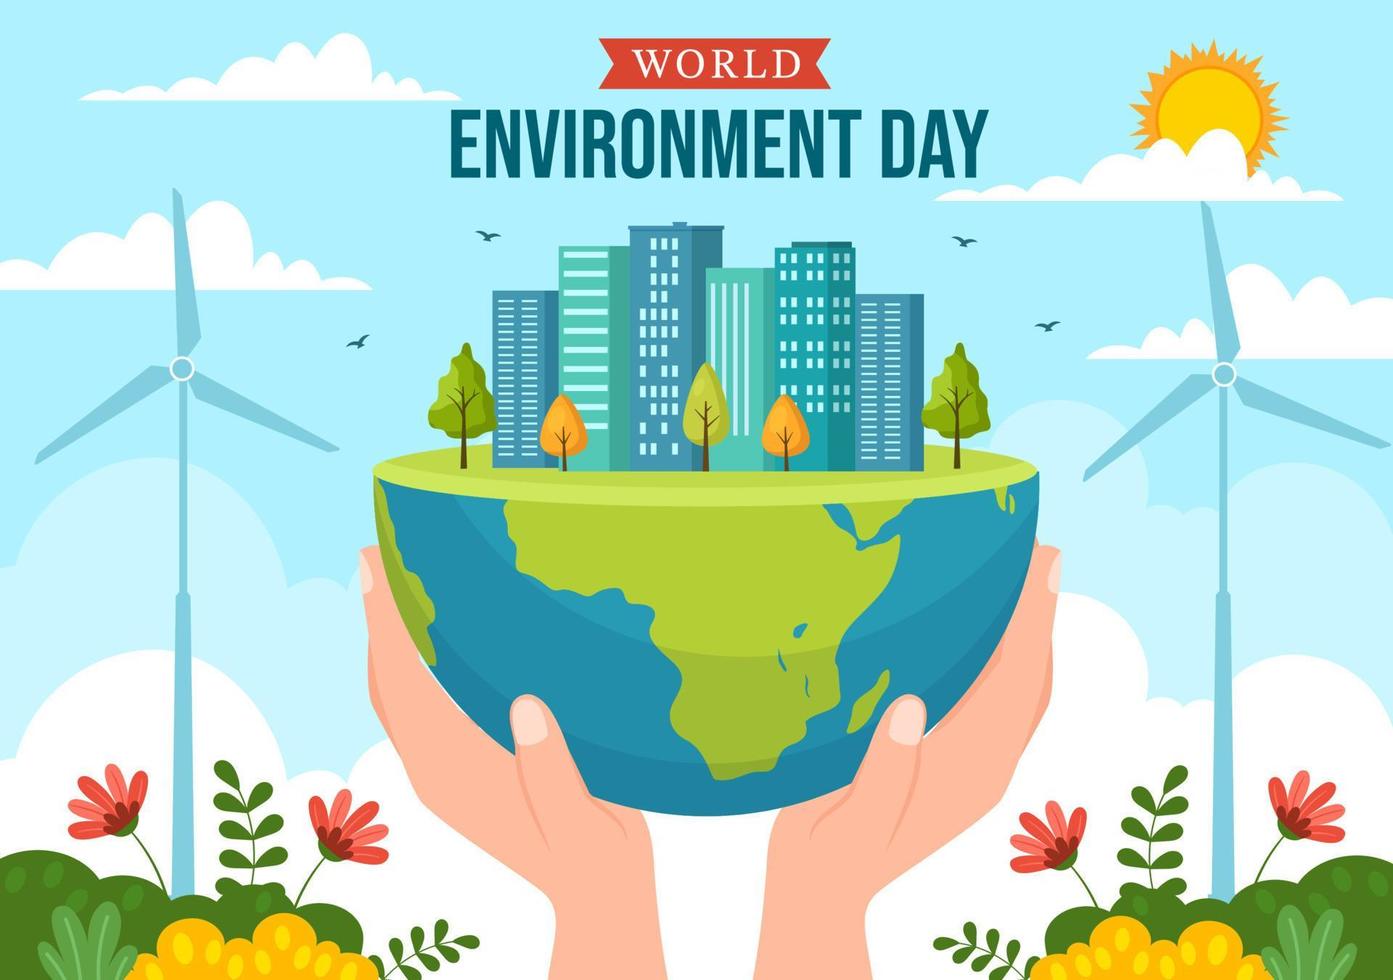 värld miljö dag illustration med grön träd och djur i skog för spara de planet eller tar vård av de jord i hand dragen mallar vektor